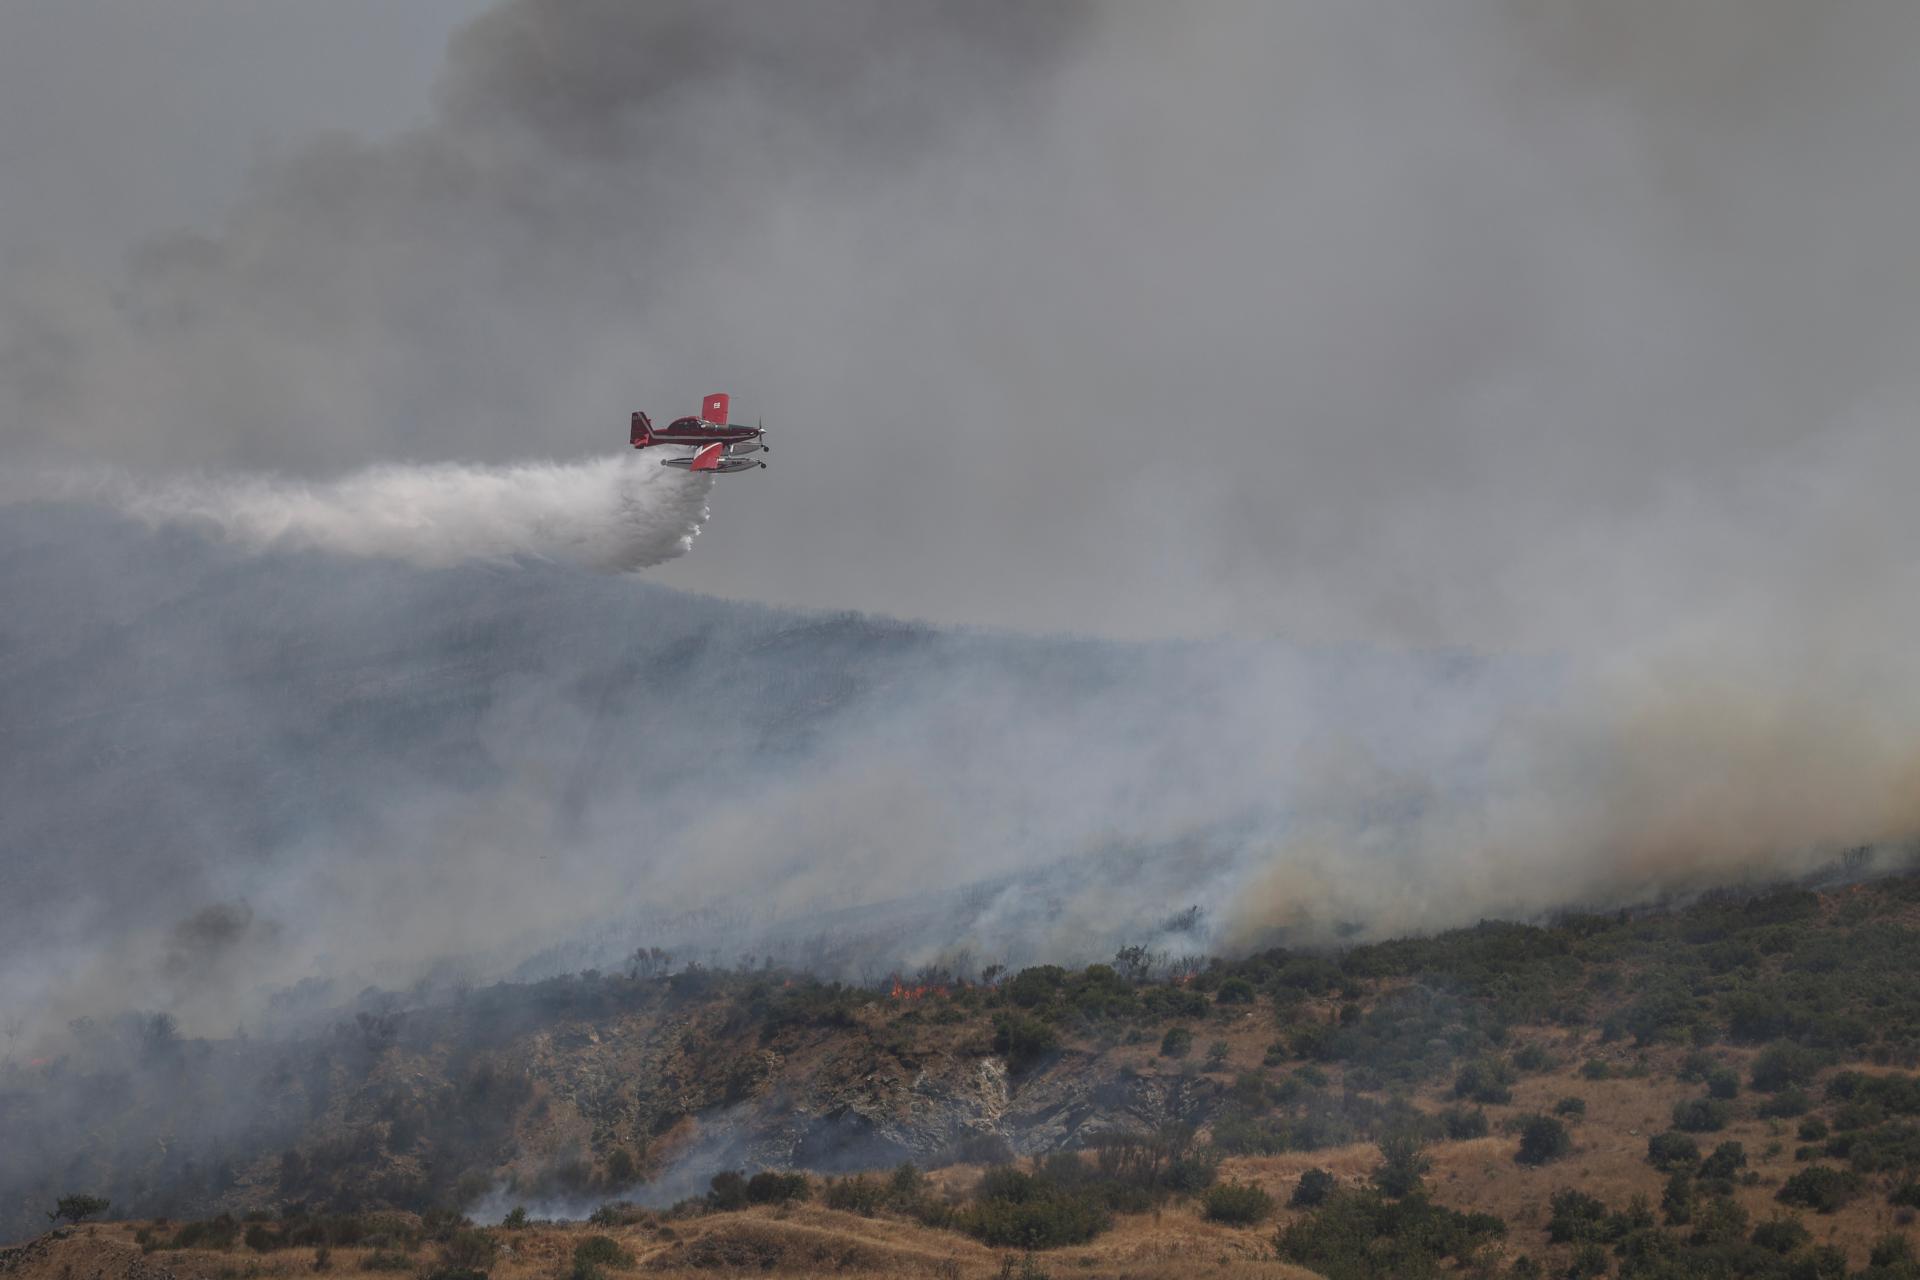 Grécky premiér v čase horúčav sľubuje zintenzívnenie boja proti zmene klímy, horí 500 požiarov